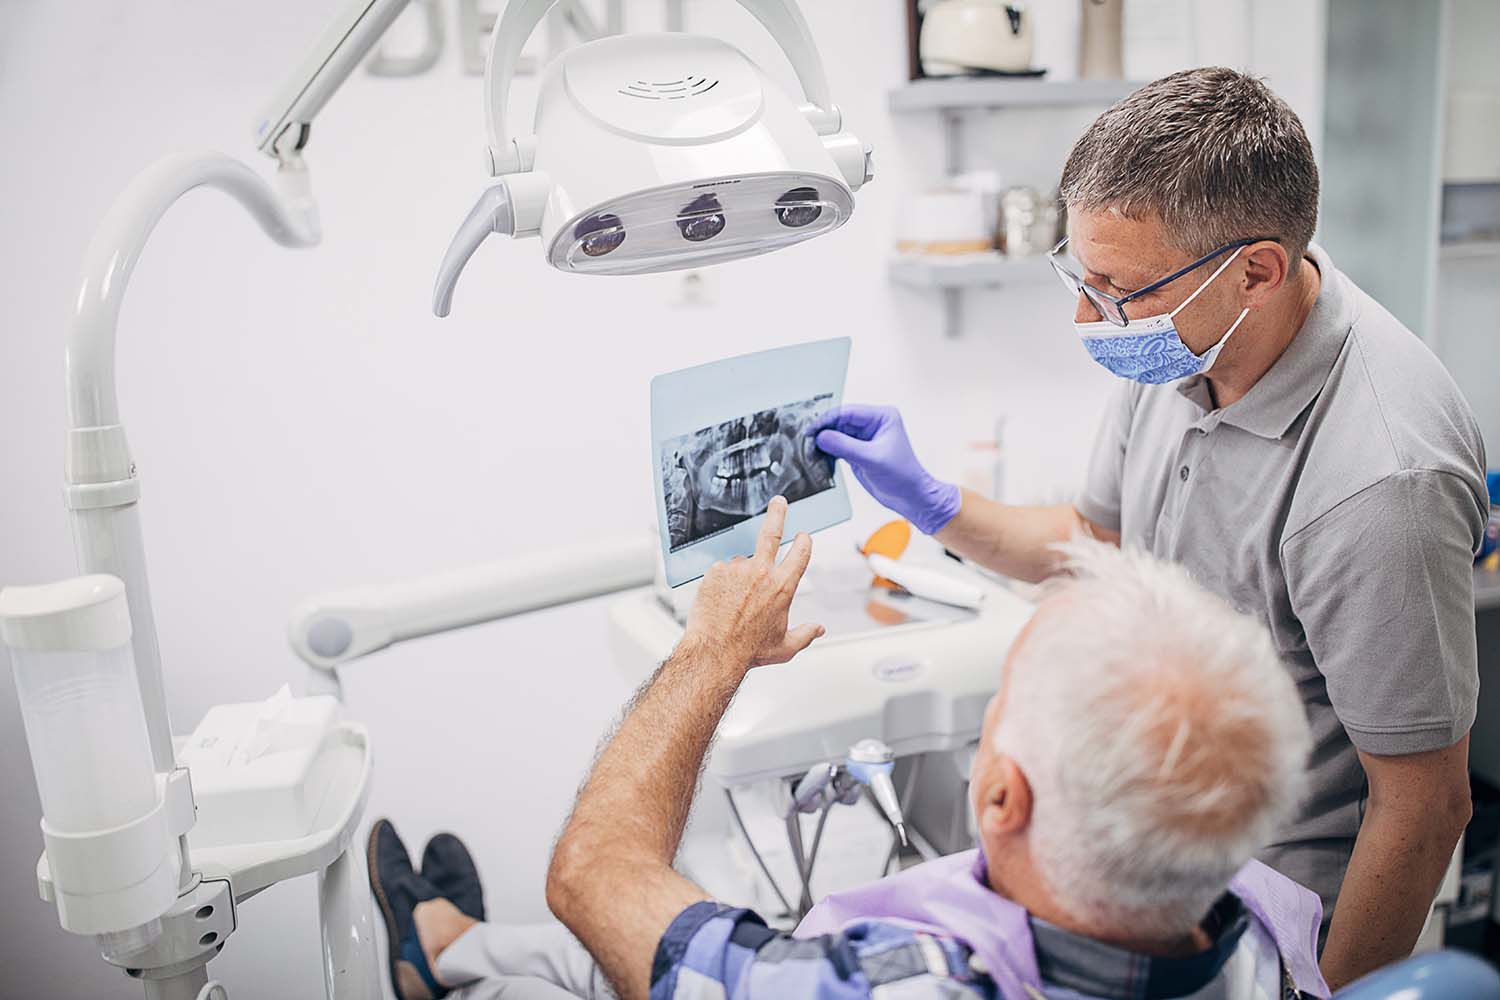 Best Dental Insurance for Seniors on Medicare